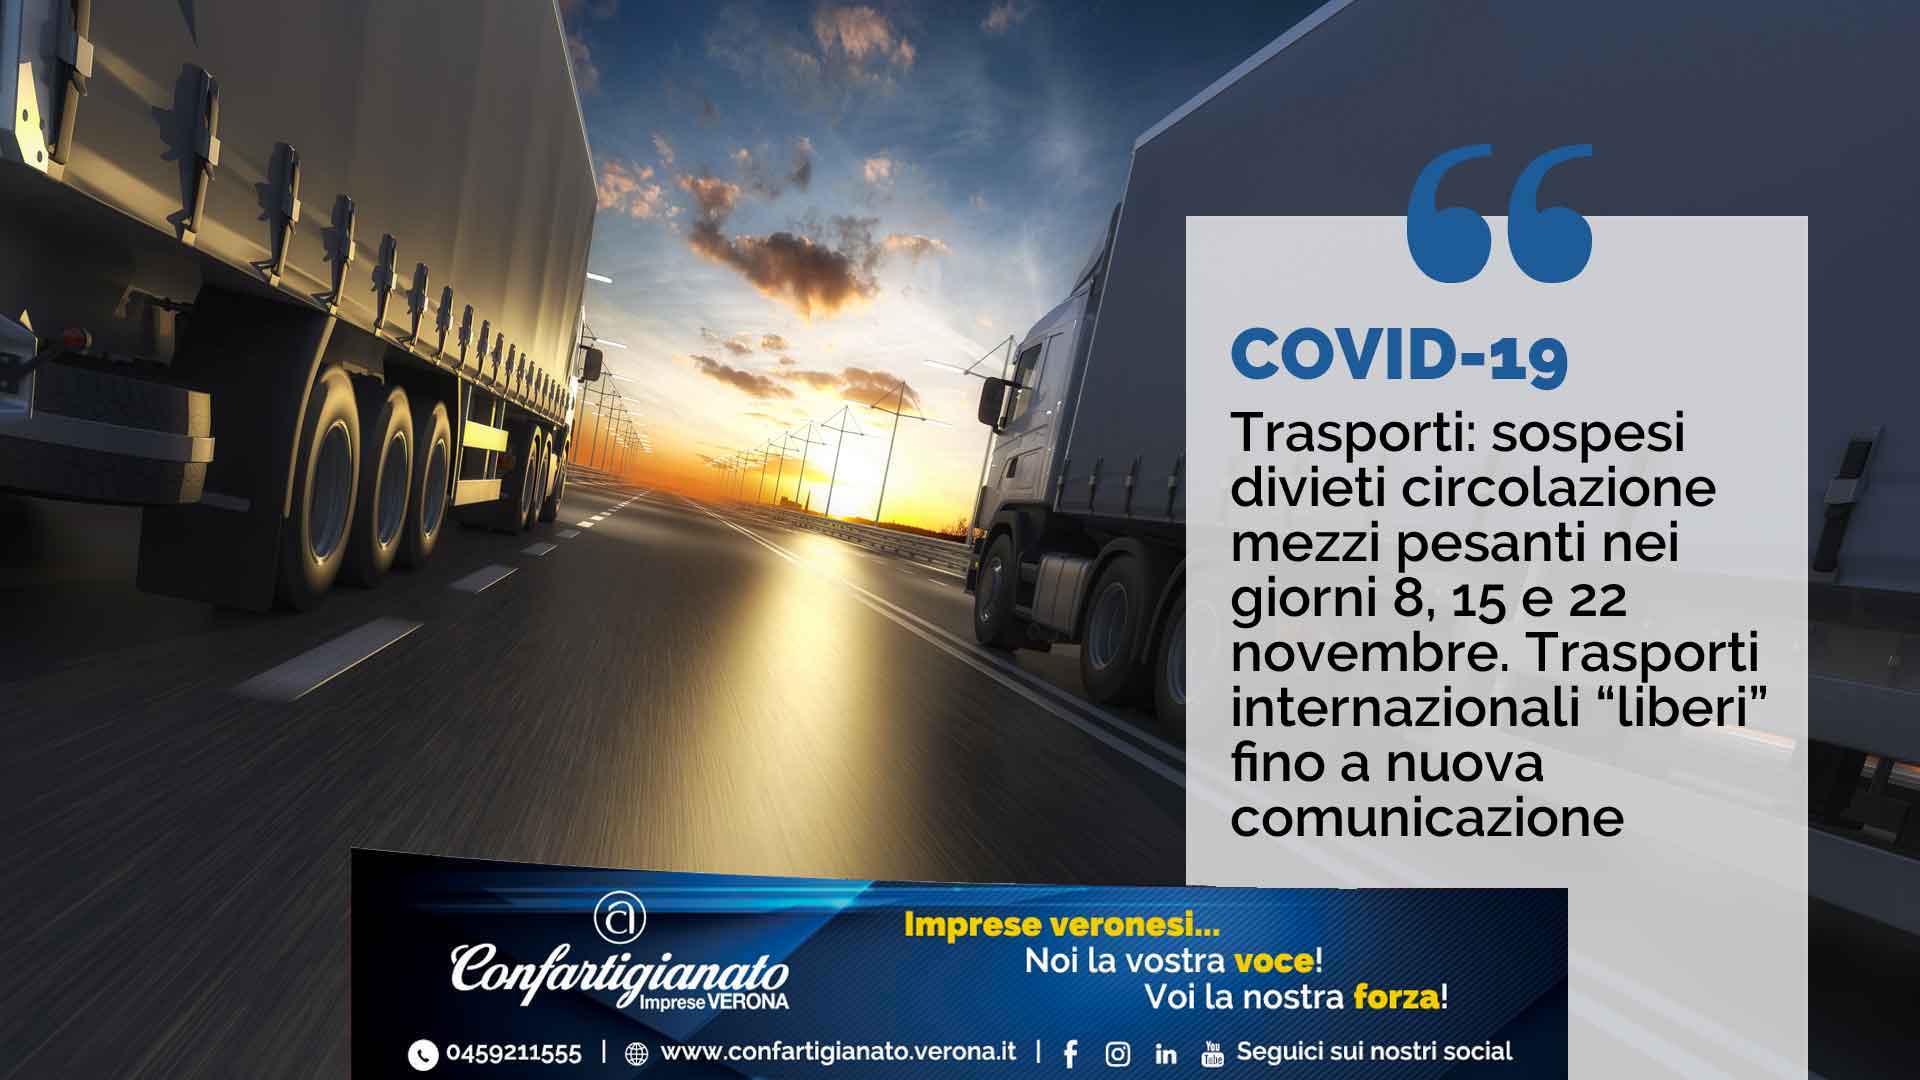 COVID-19 – Trasporti: Sospesi divieti circolazione mezzi pesanti nei giorni 8, 15 e 22 novembre. Trasporti internazionali “liberi” fino a nuova comunicazione